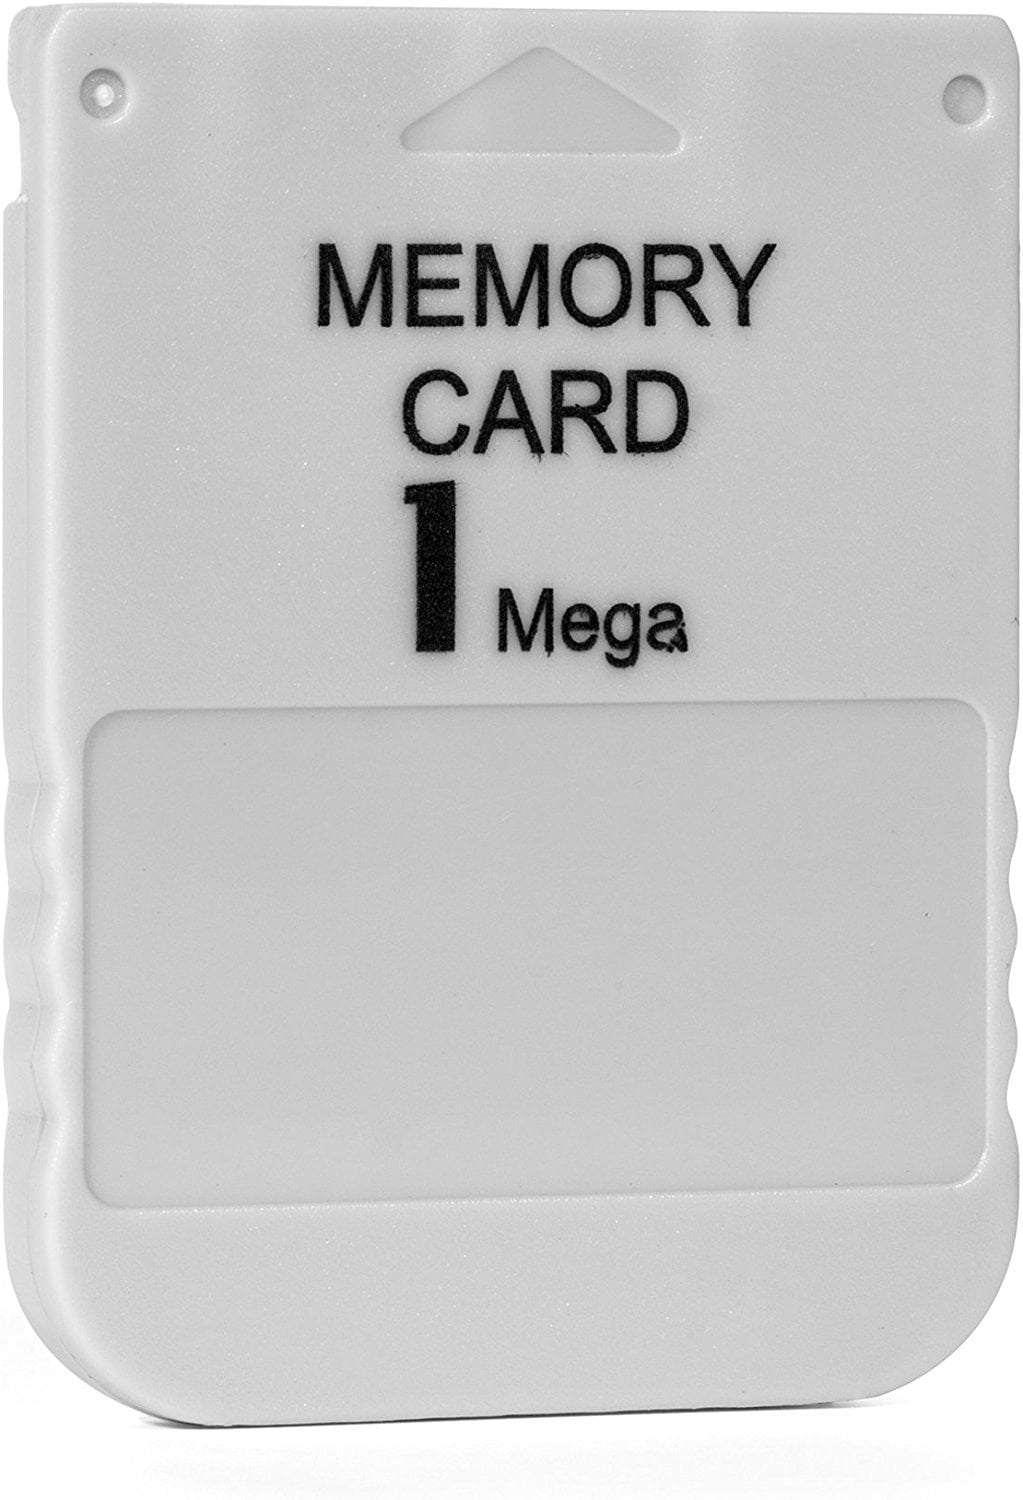 Playstation 1 Memory Card 1MB 15Blocks -